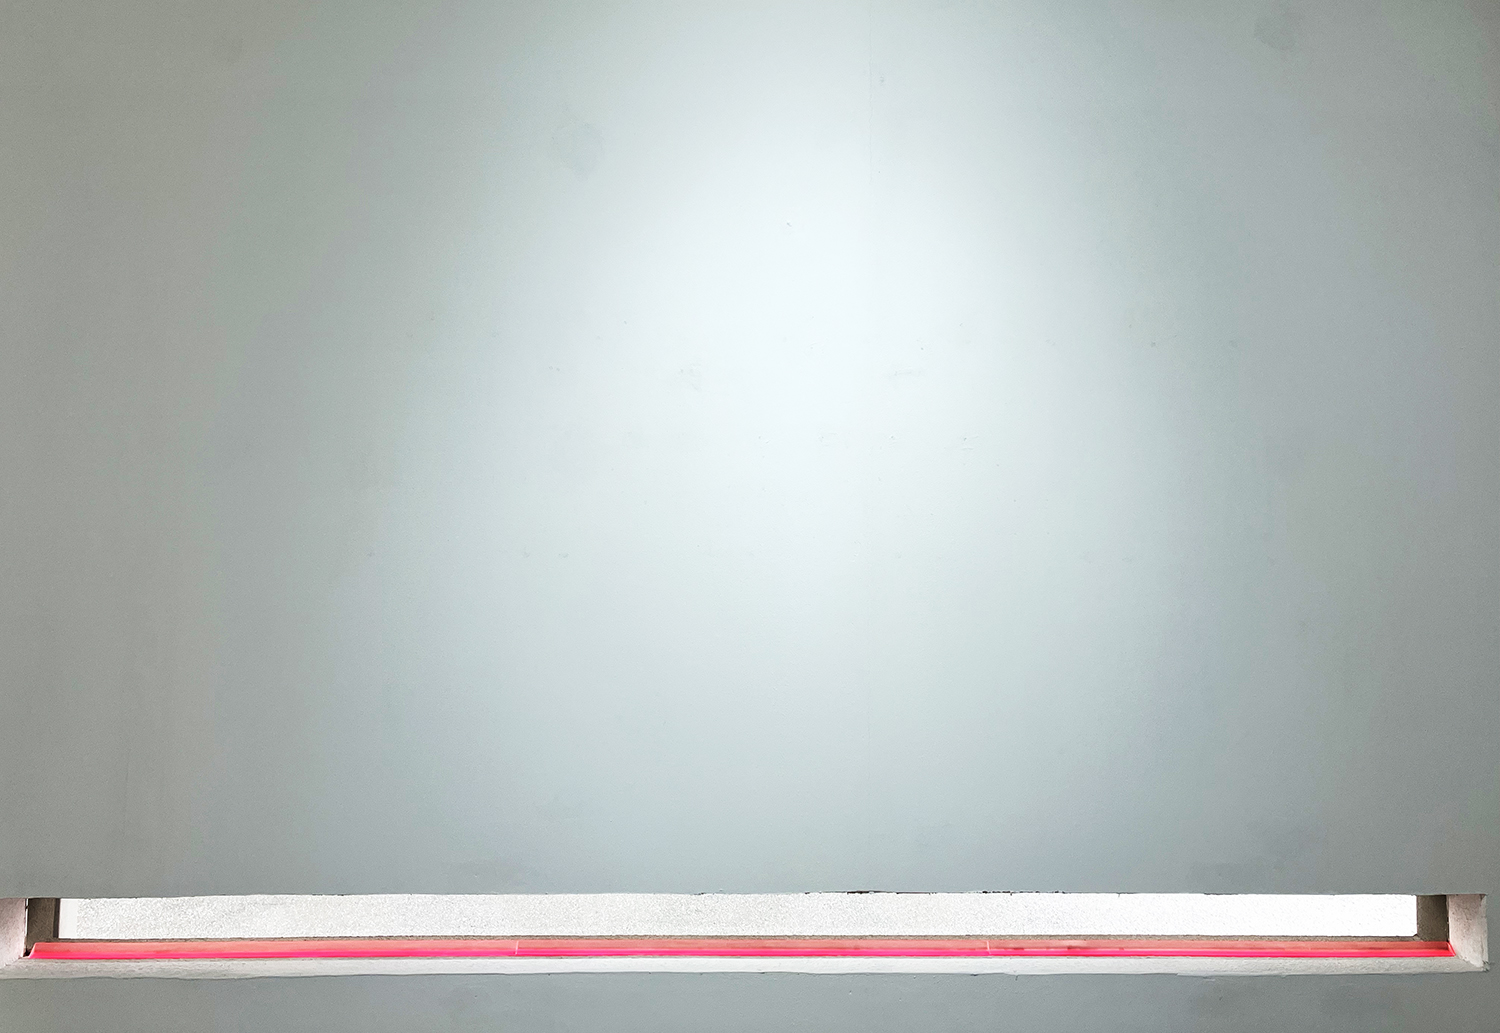 イロ｜Color, Silkscreen on triangular pyramid acrylic, 181.5 cm length, 2021